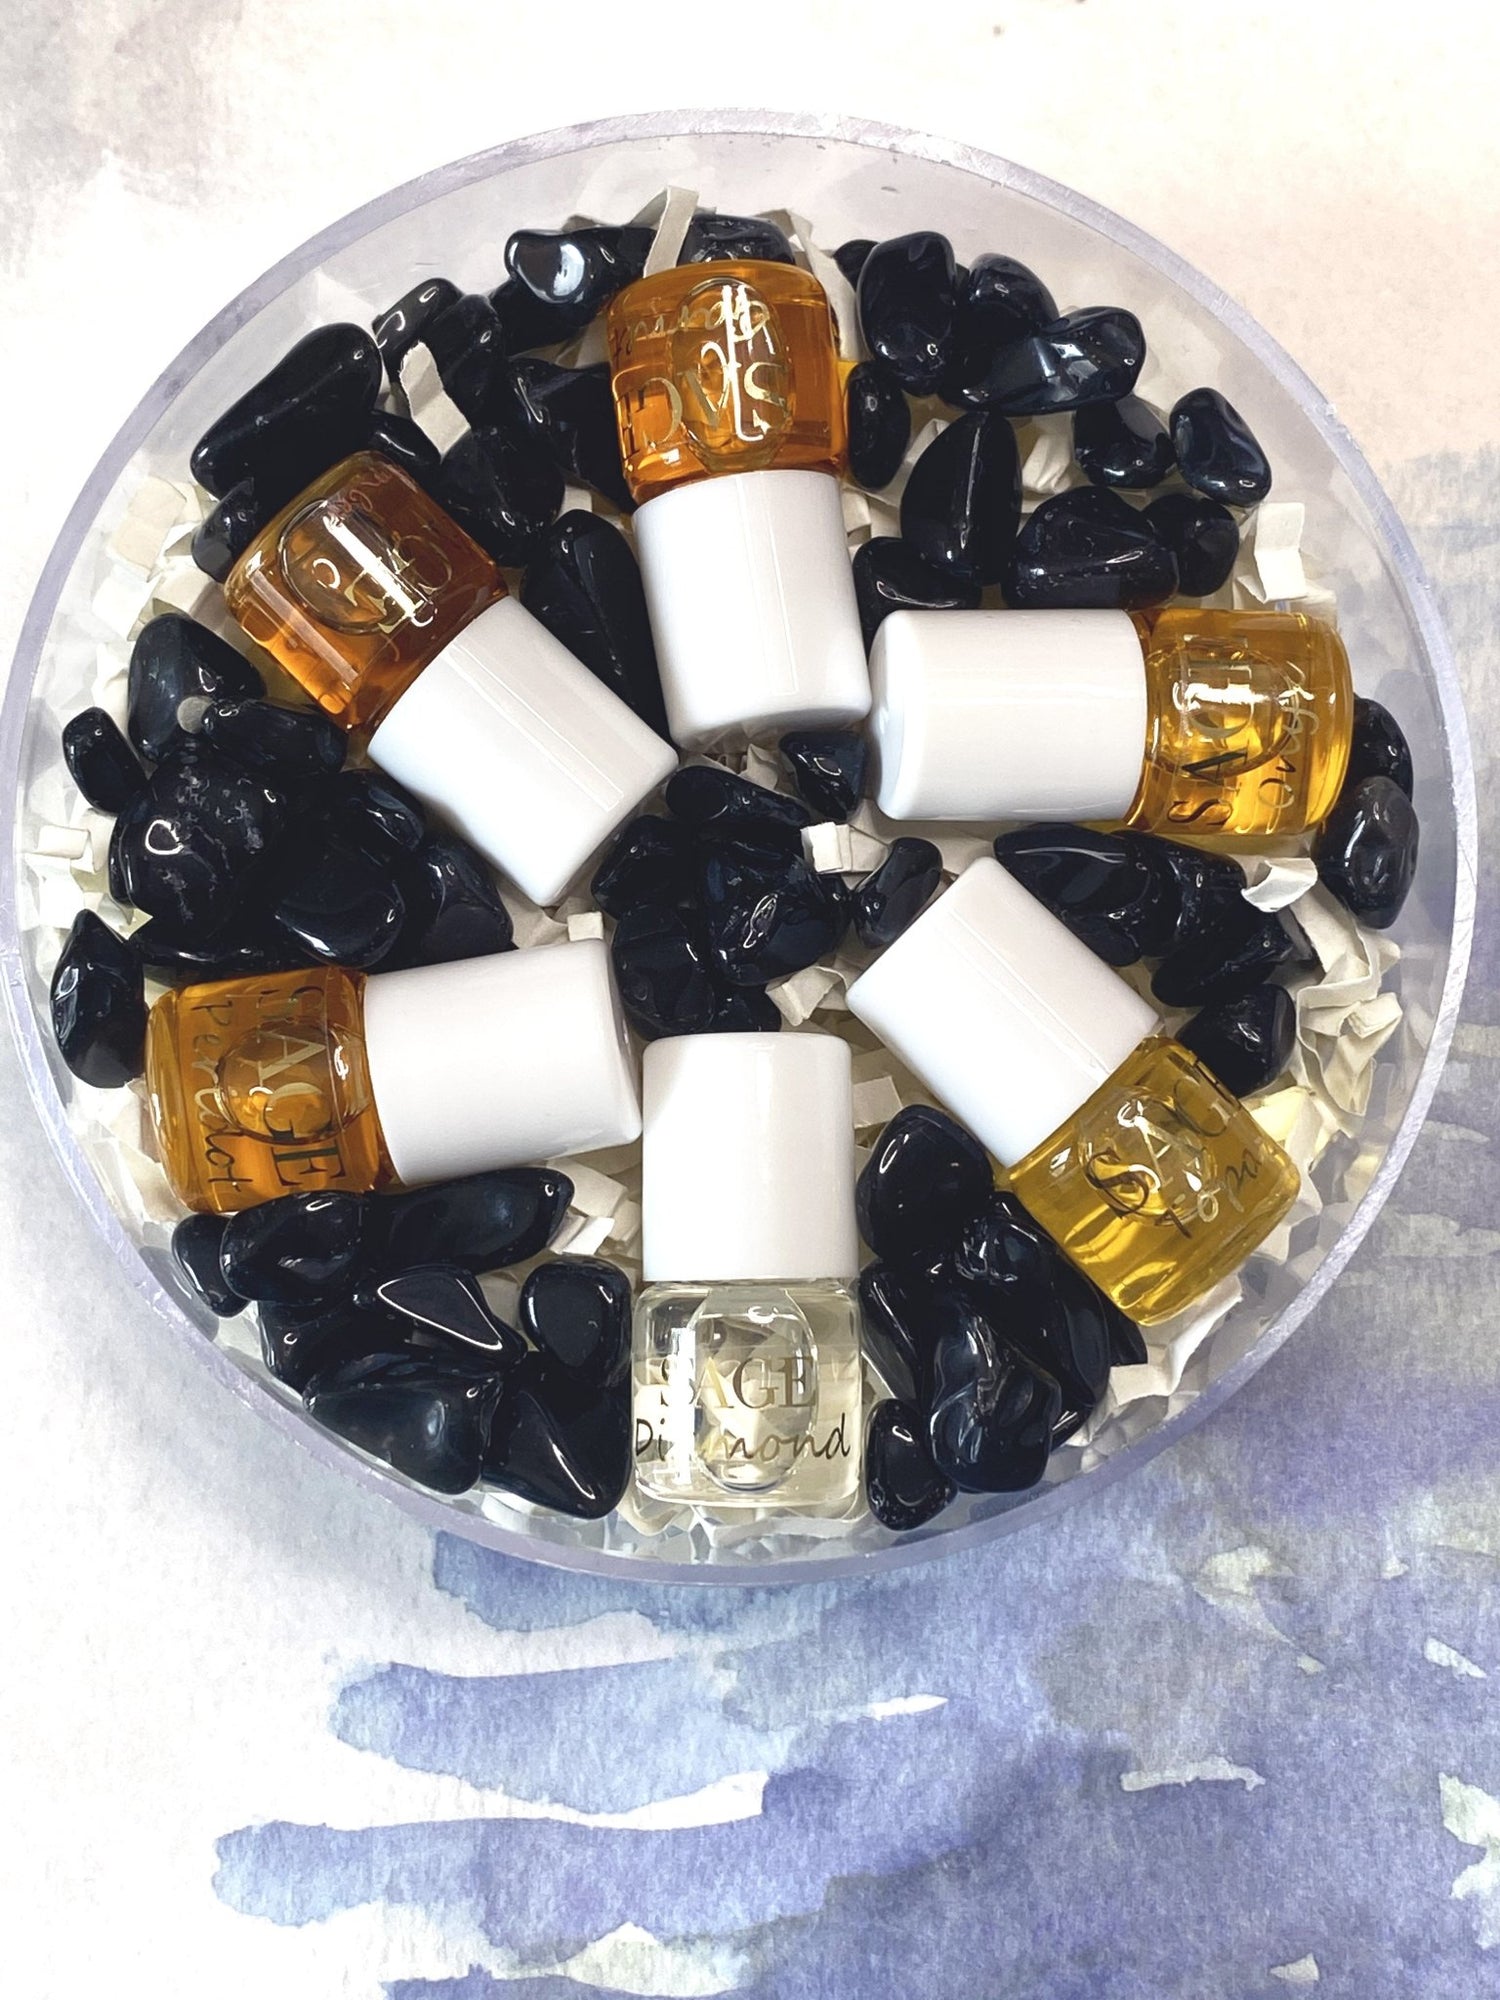 Darker Gemstone Palette Perfume Oils Mini Rollies by Sage - The Sage Lifestyle